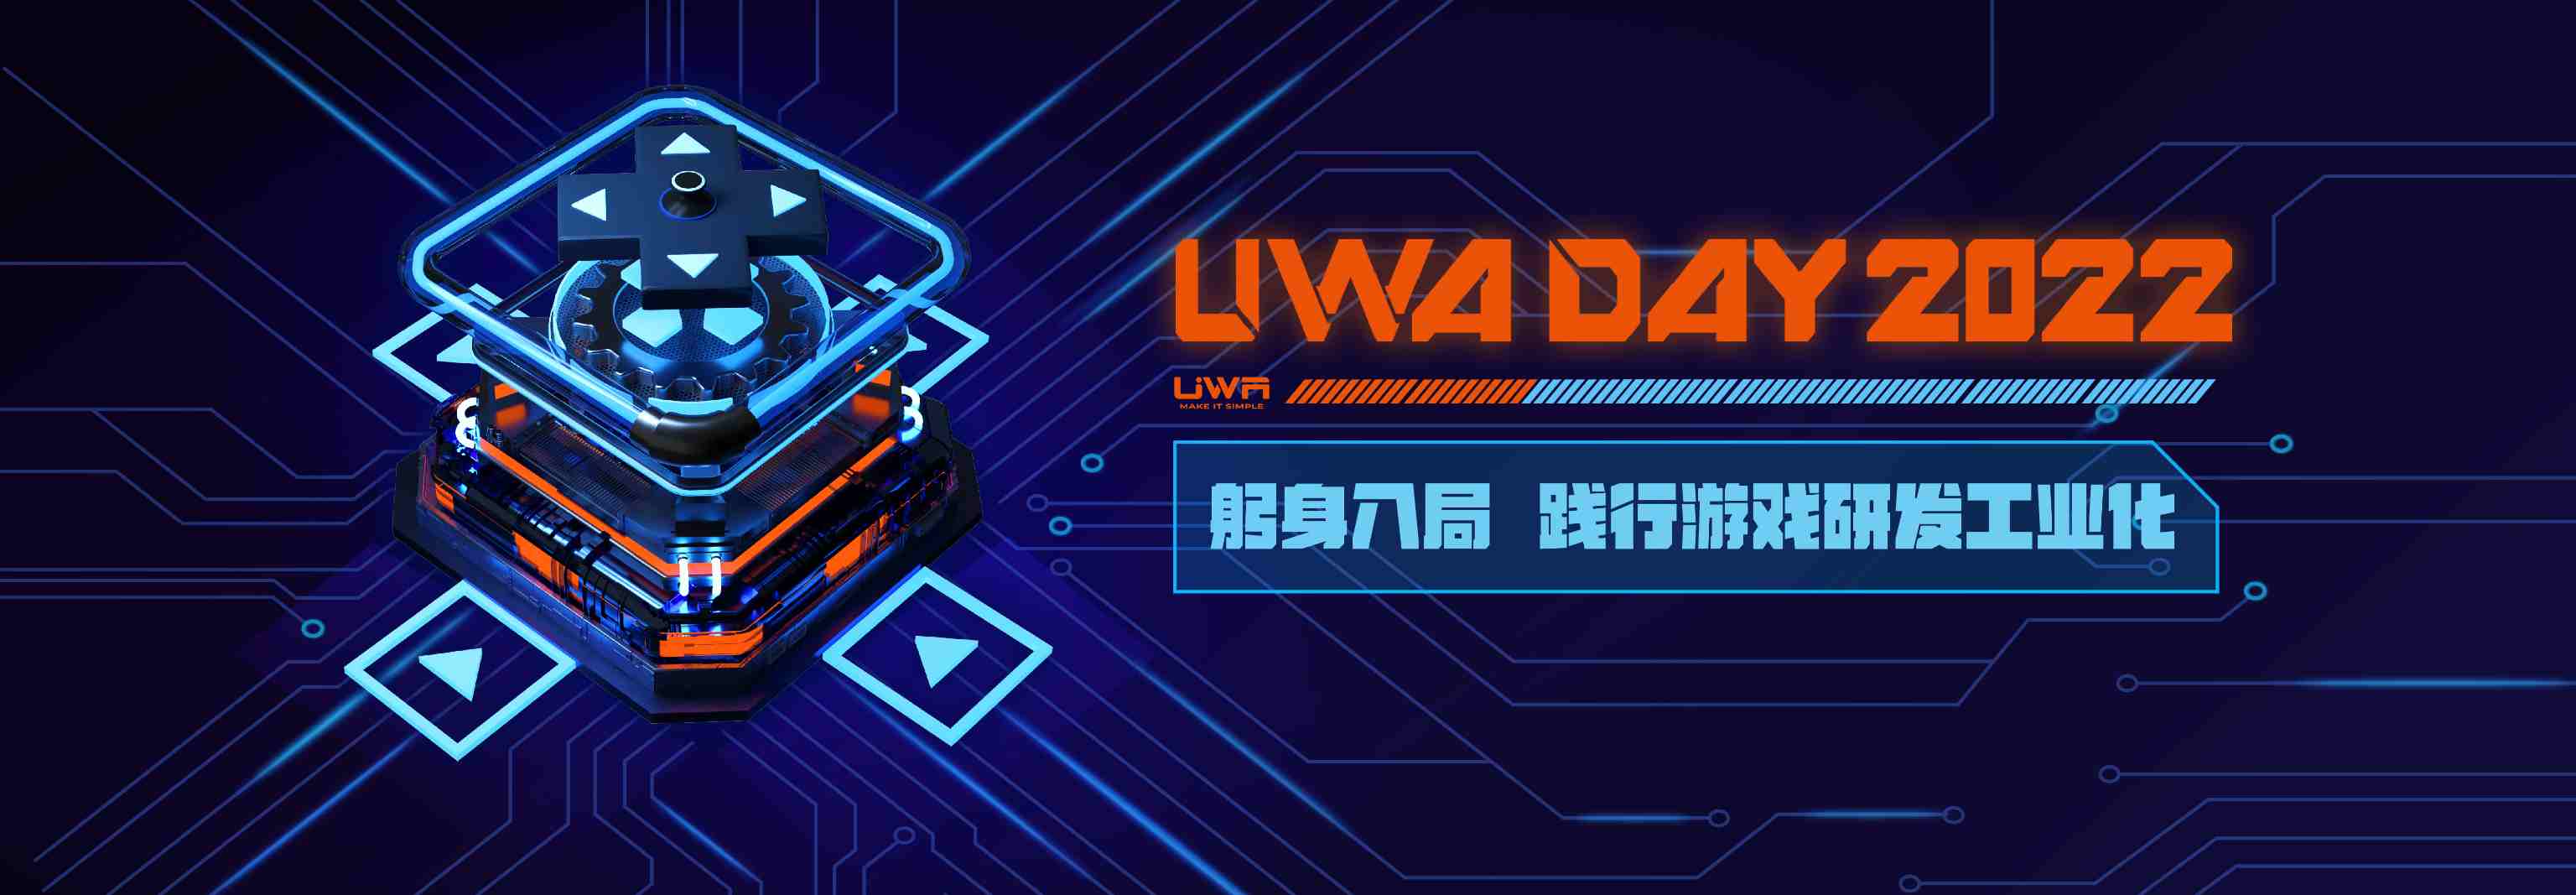 UWA DAY 2022 正式启动